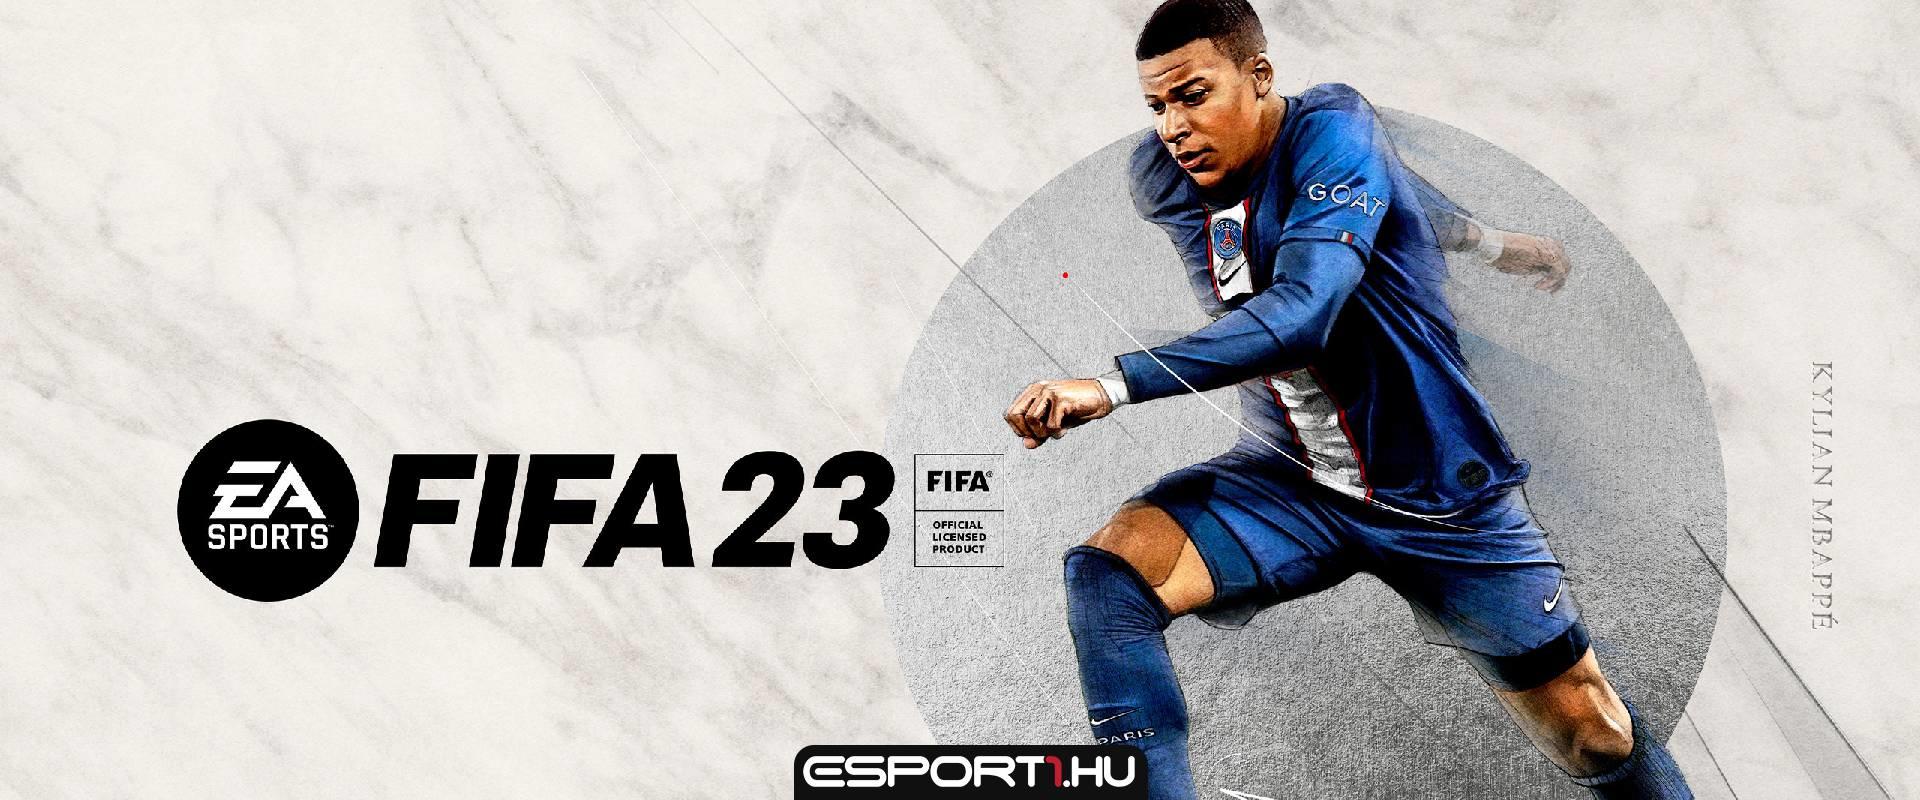 Az EA nem veszi ki a csomagokat a FIFA 23-ból, mert a játékosok imádják őket